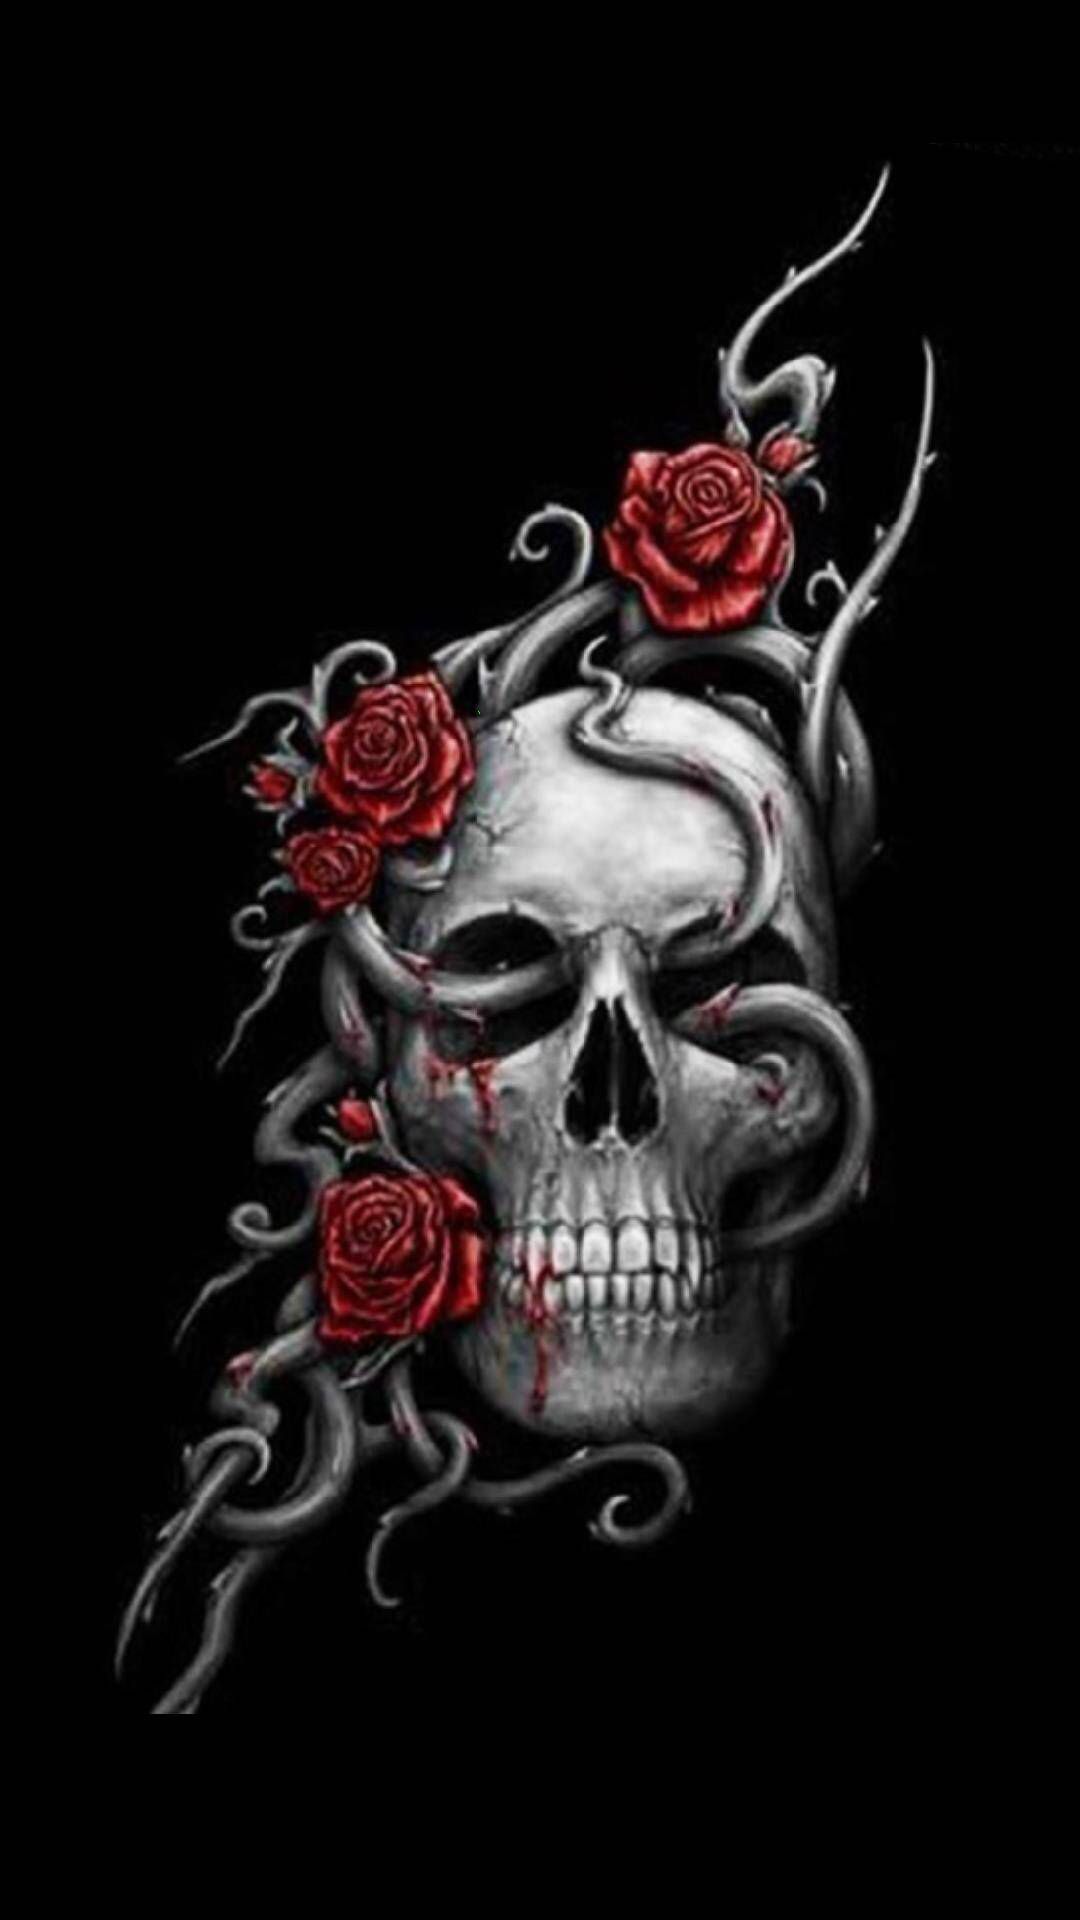 Skull rose. Skull and rose drawing, Skull wallpaper, Skull art drawing